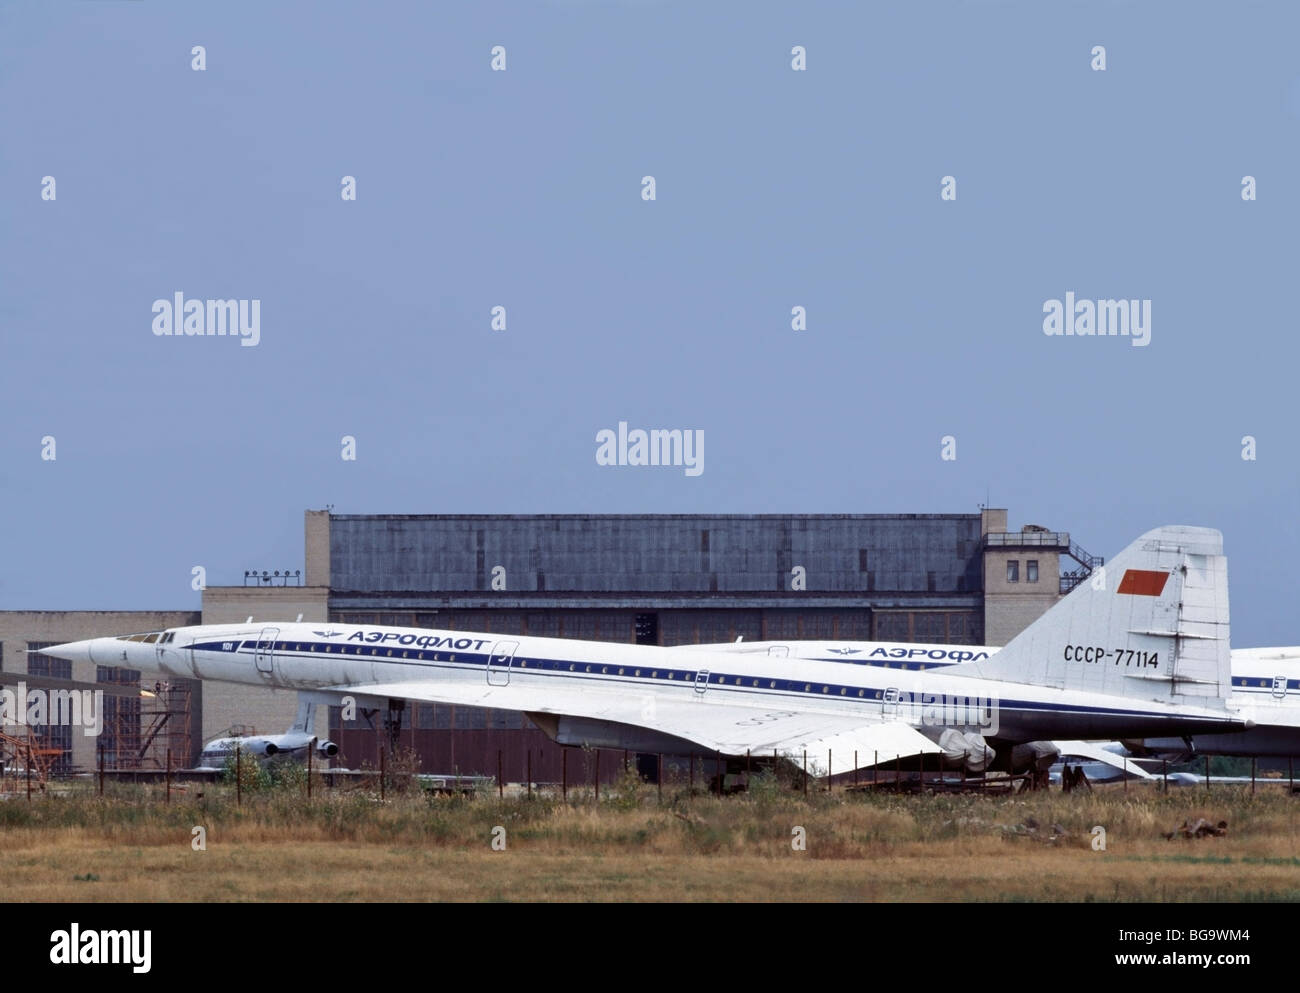 Eingemottet Tu - 144D, der erste Überschall-Verkehrsflugzeug zu fliegen, vor einem Kleiderbügel auf dem Flugplatz Schukowski bei Moskau, Russland Stockfoto